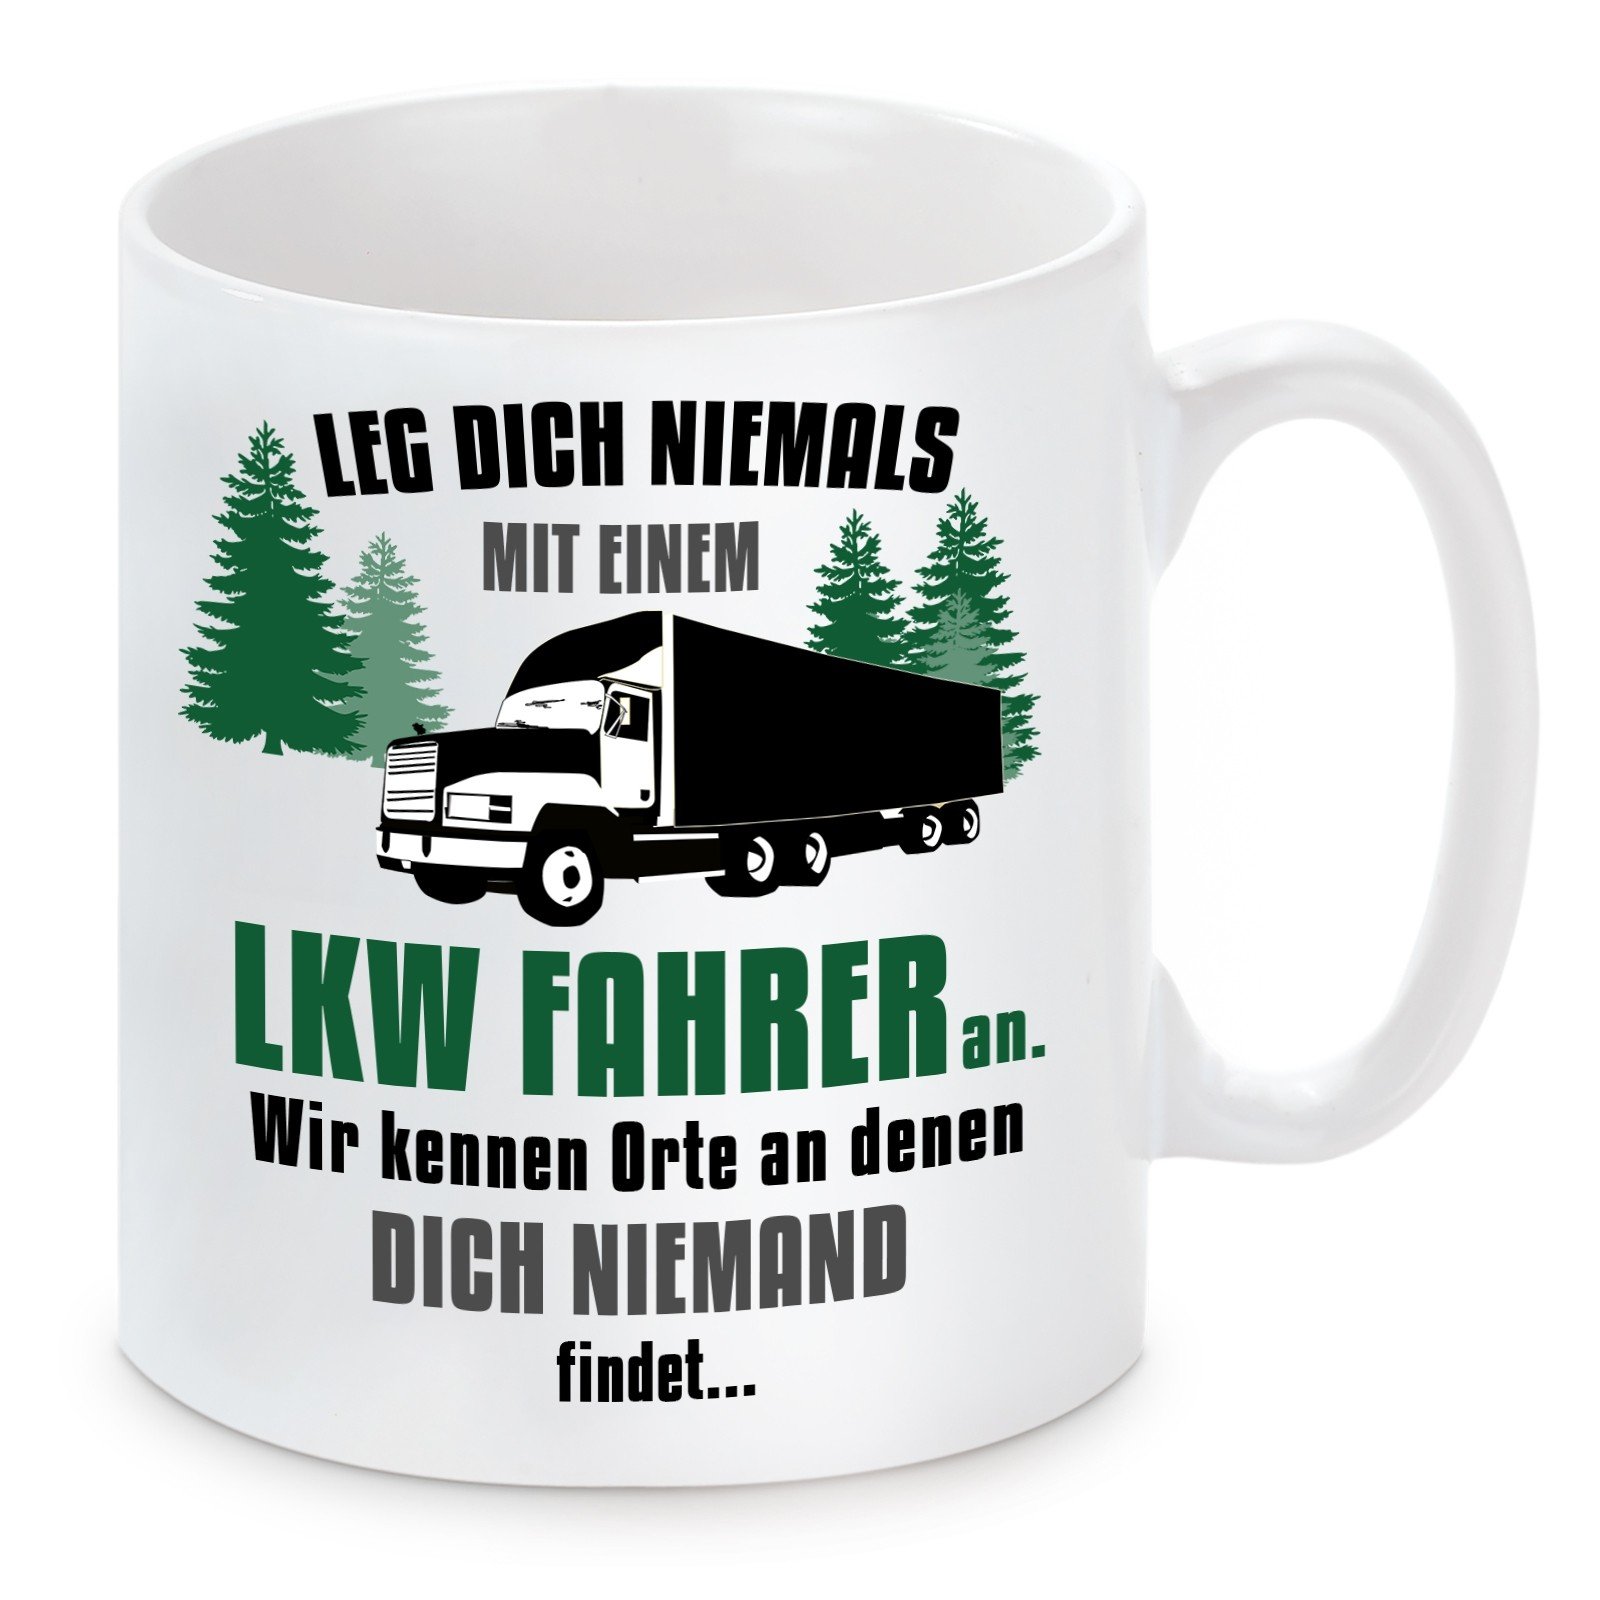 Tasse mit Motiv - Leg dich niemals mit einem LKW Fahrer an.